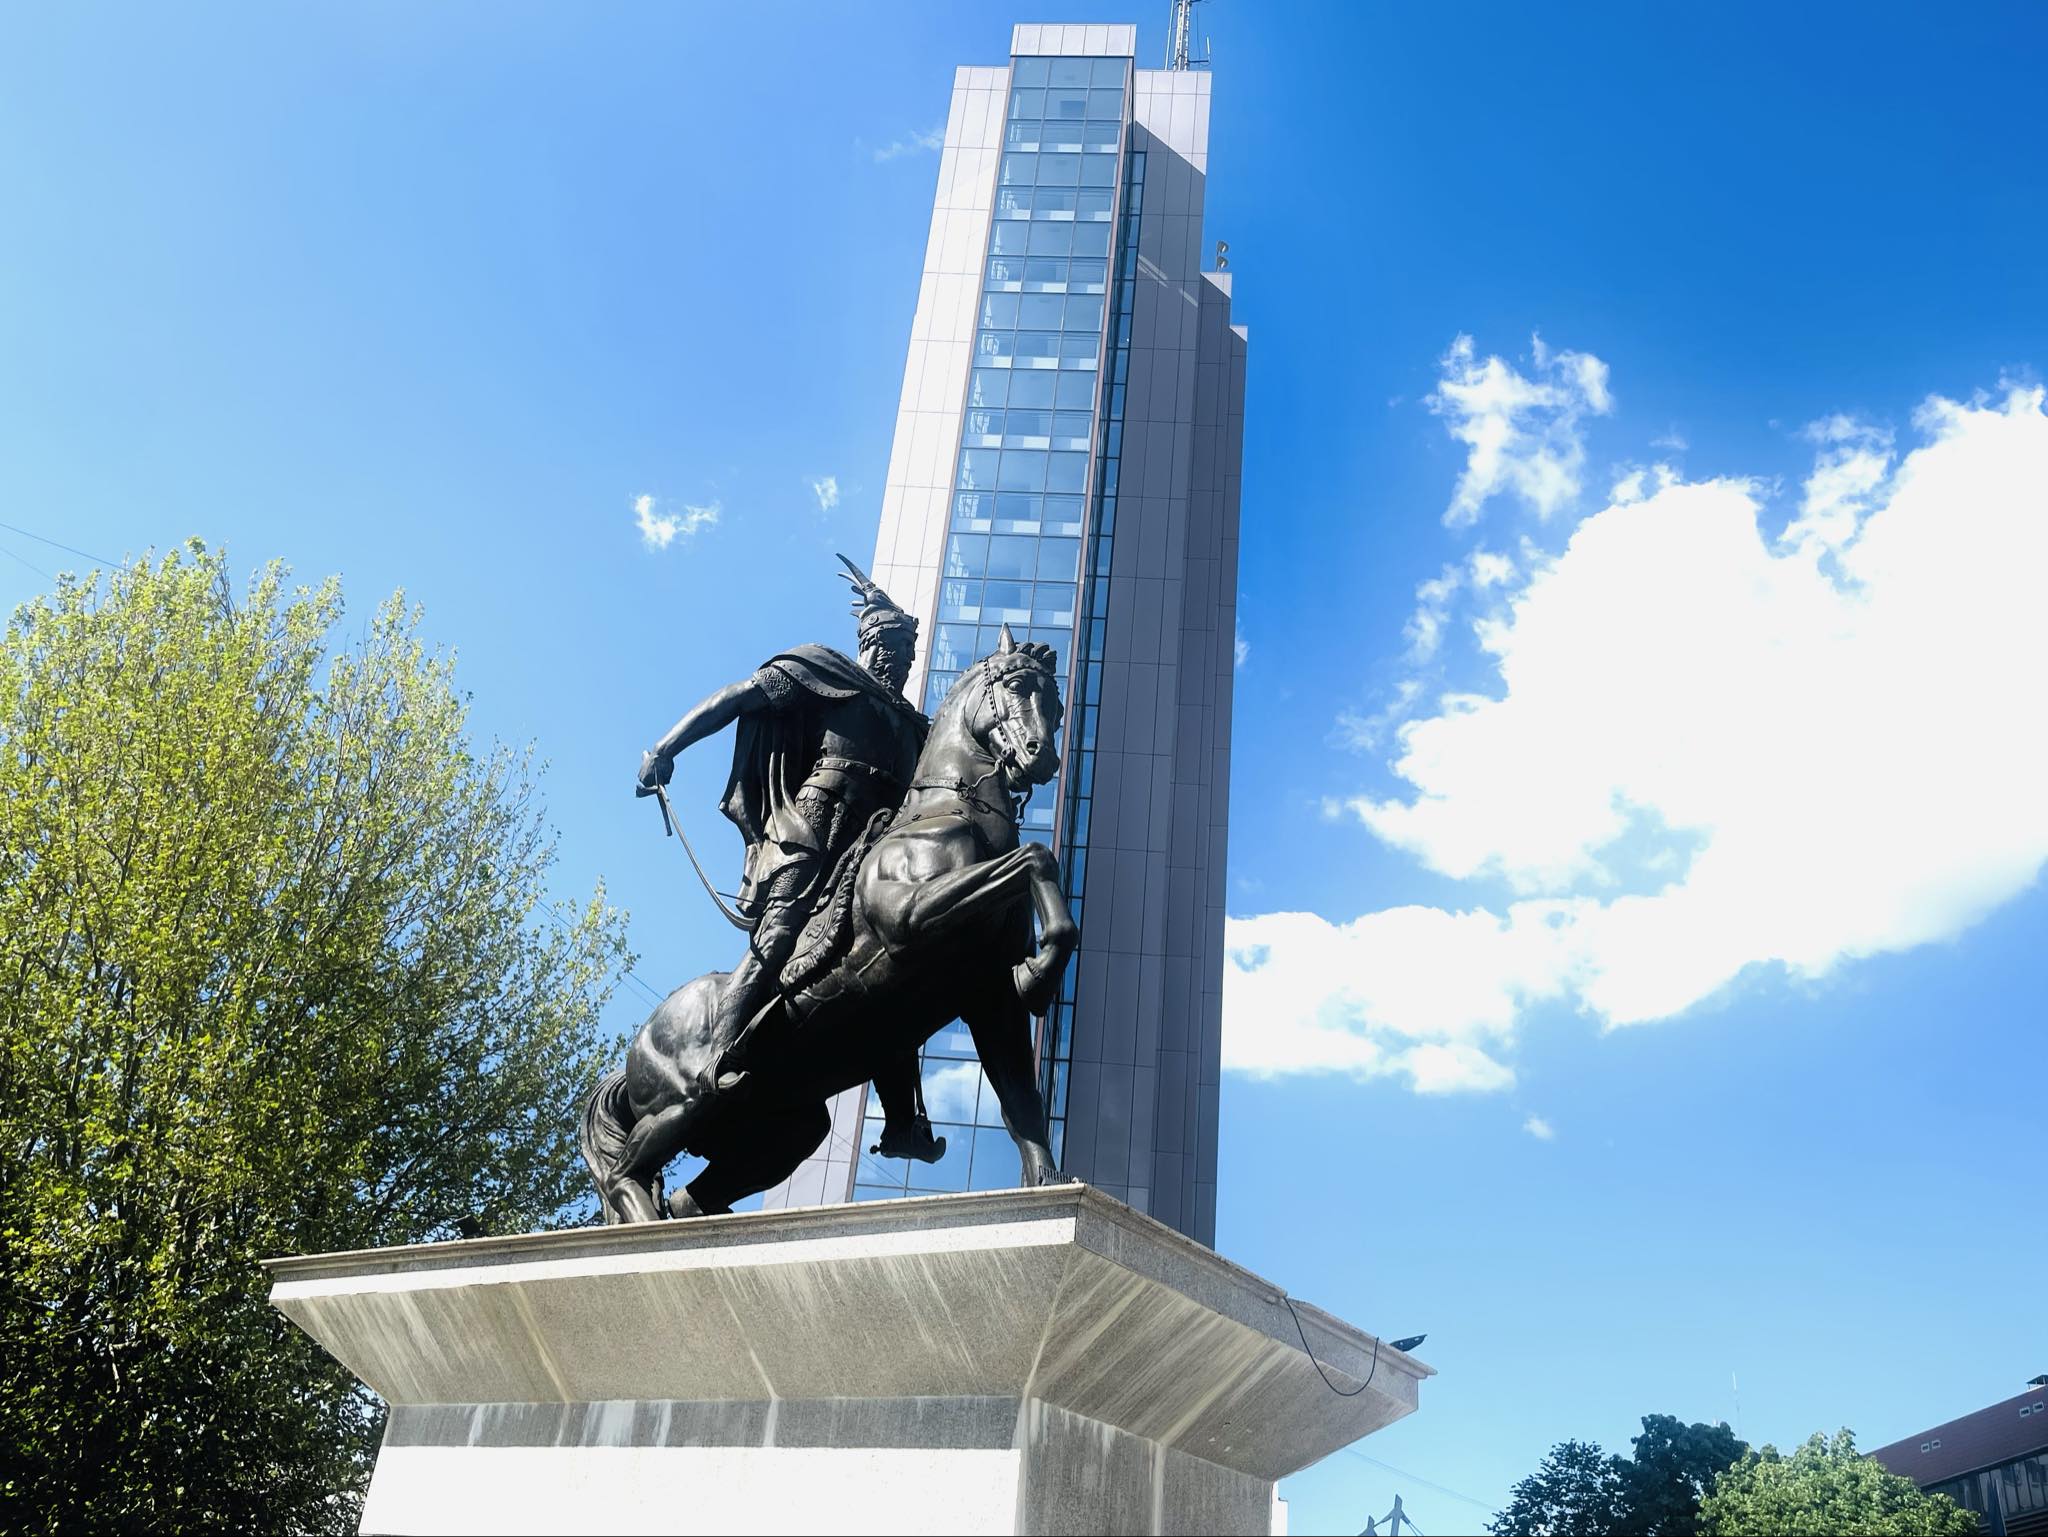 Festë e madhe në Prishtinë për ditëlindjen Skënderbeut